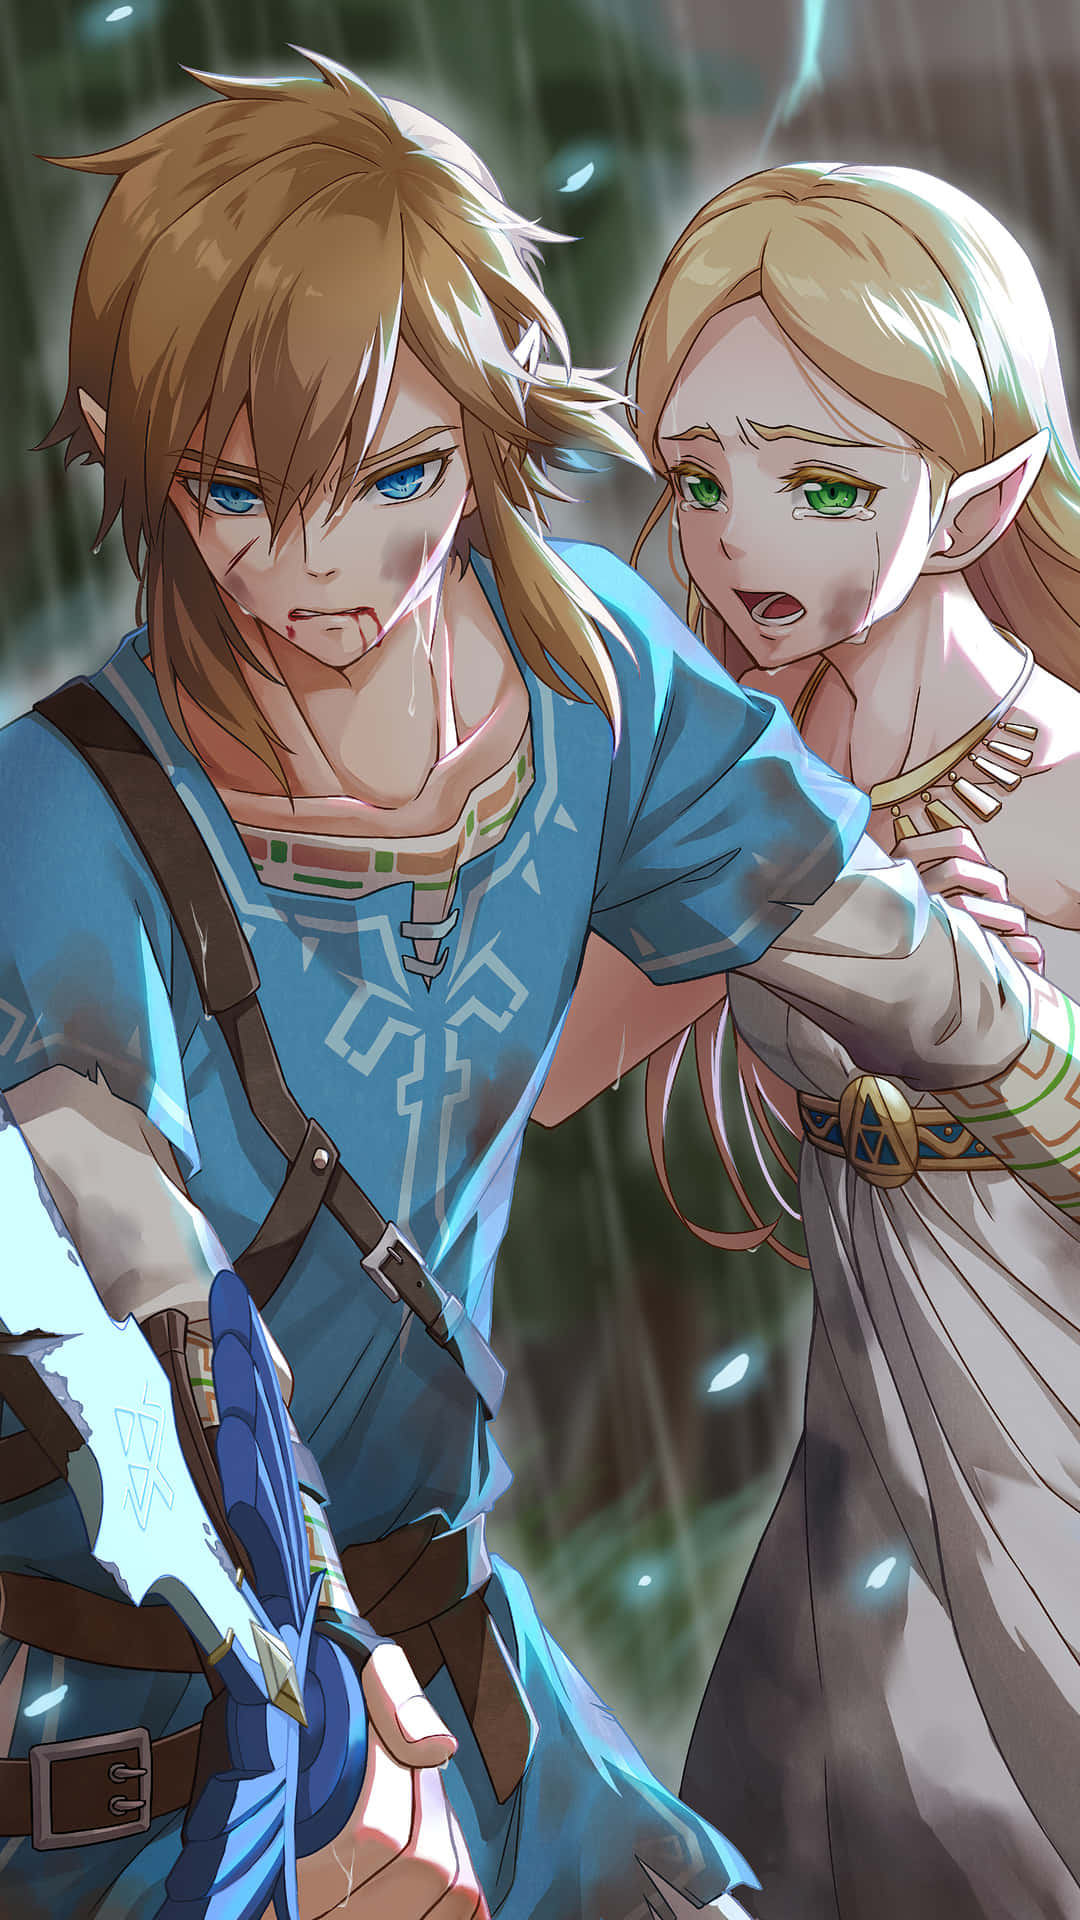 Udforsk den fantastiske verden Hyrule med det seneste The Legend of Zelda mobilspil! Wallpaper